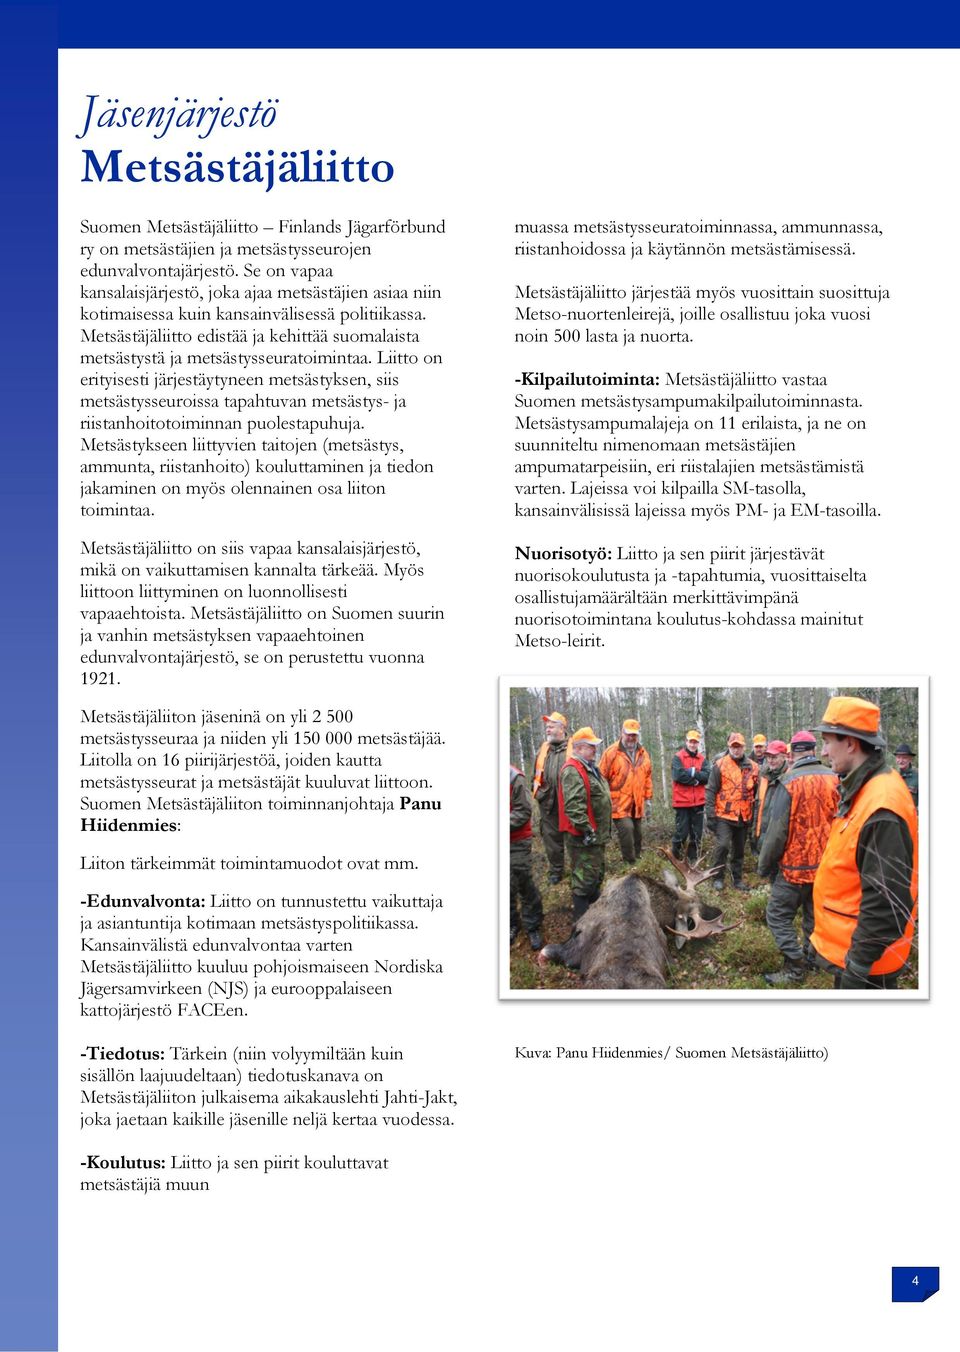 Metsästäjäliitto edistää ja kehittää suomalaista metsästystä ja metsästysseuratoimintaa.